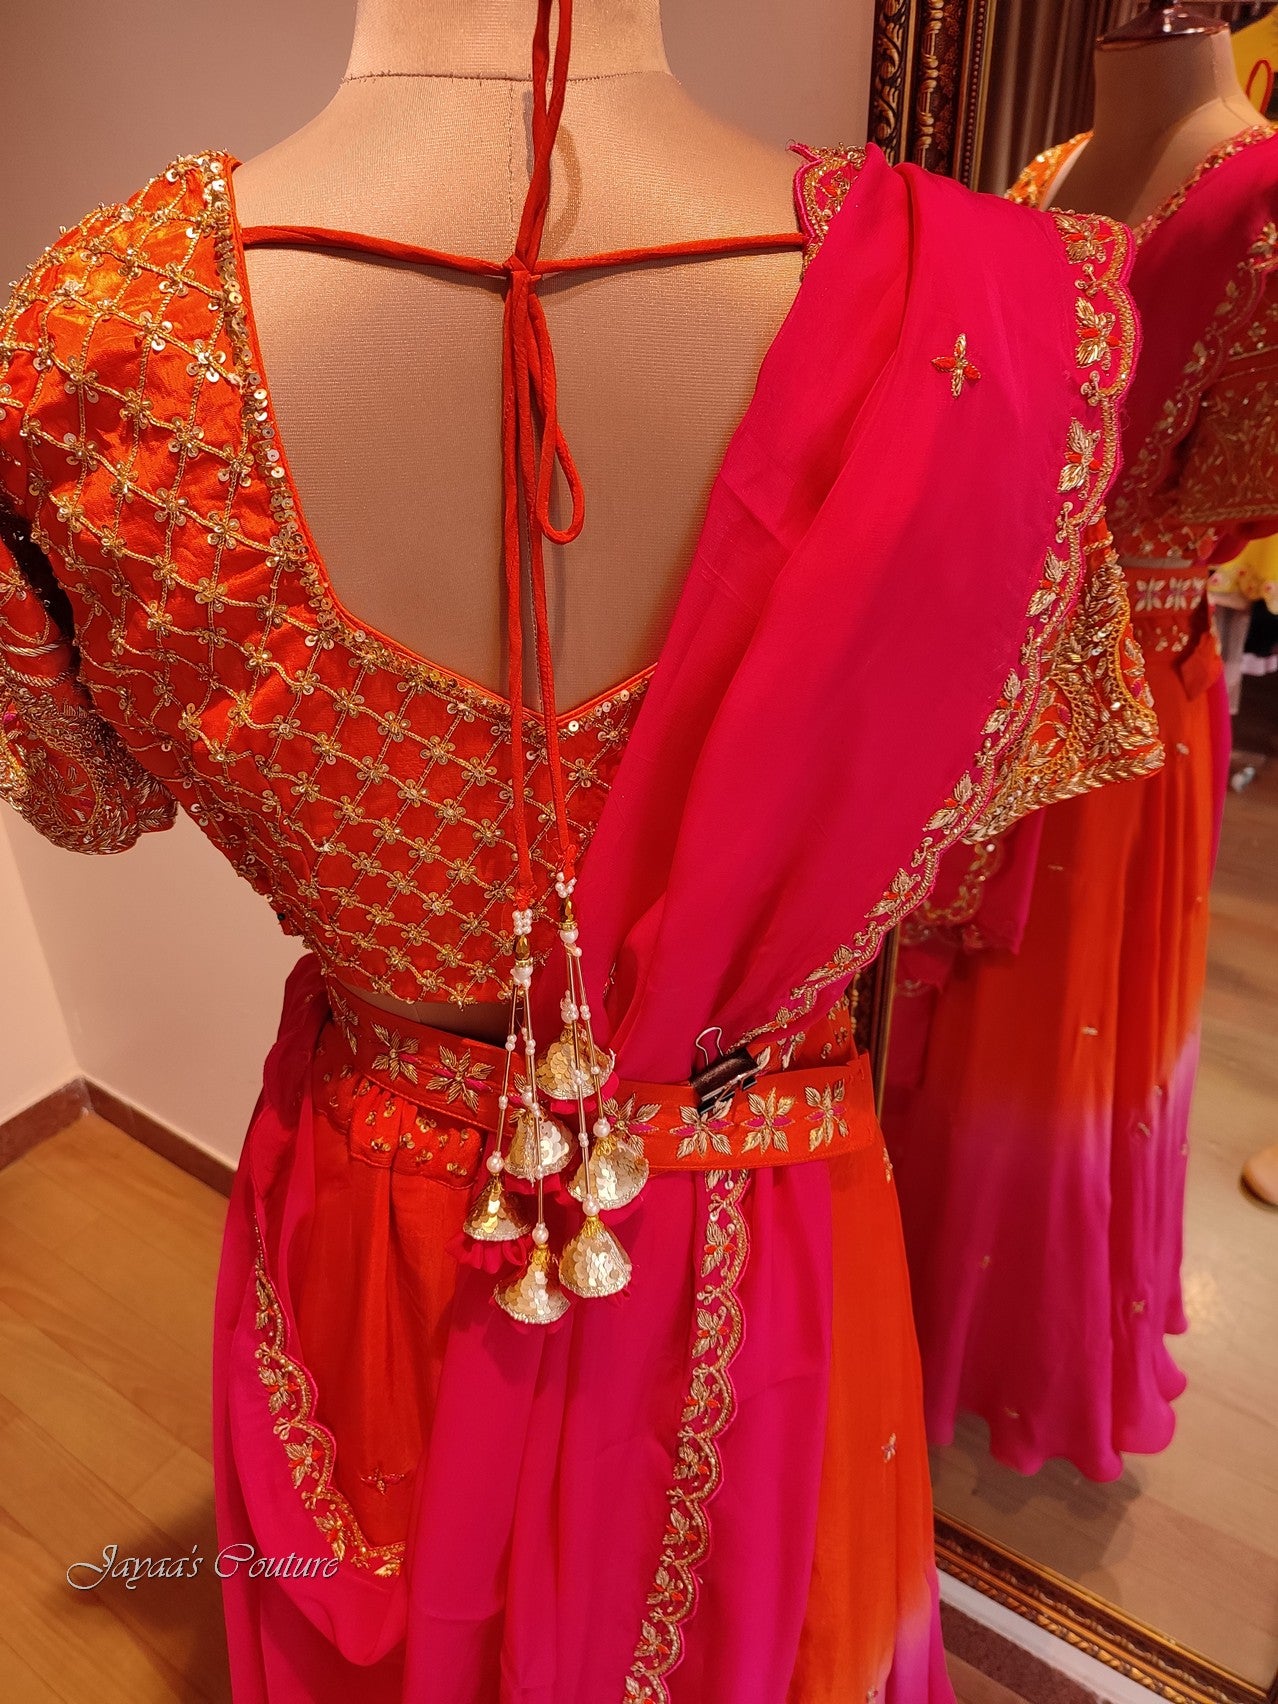 Pink Orange shaded Lehenga set with dupatta and belt